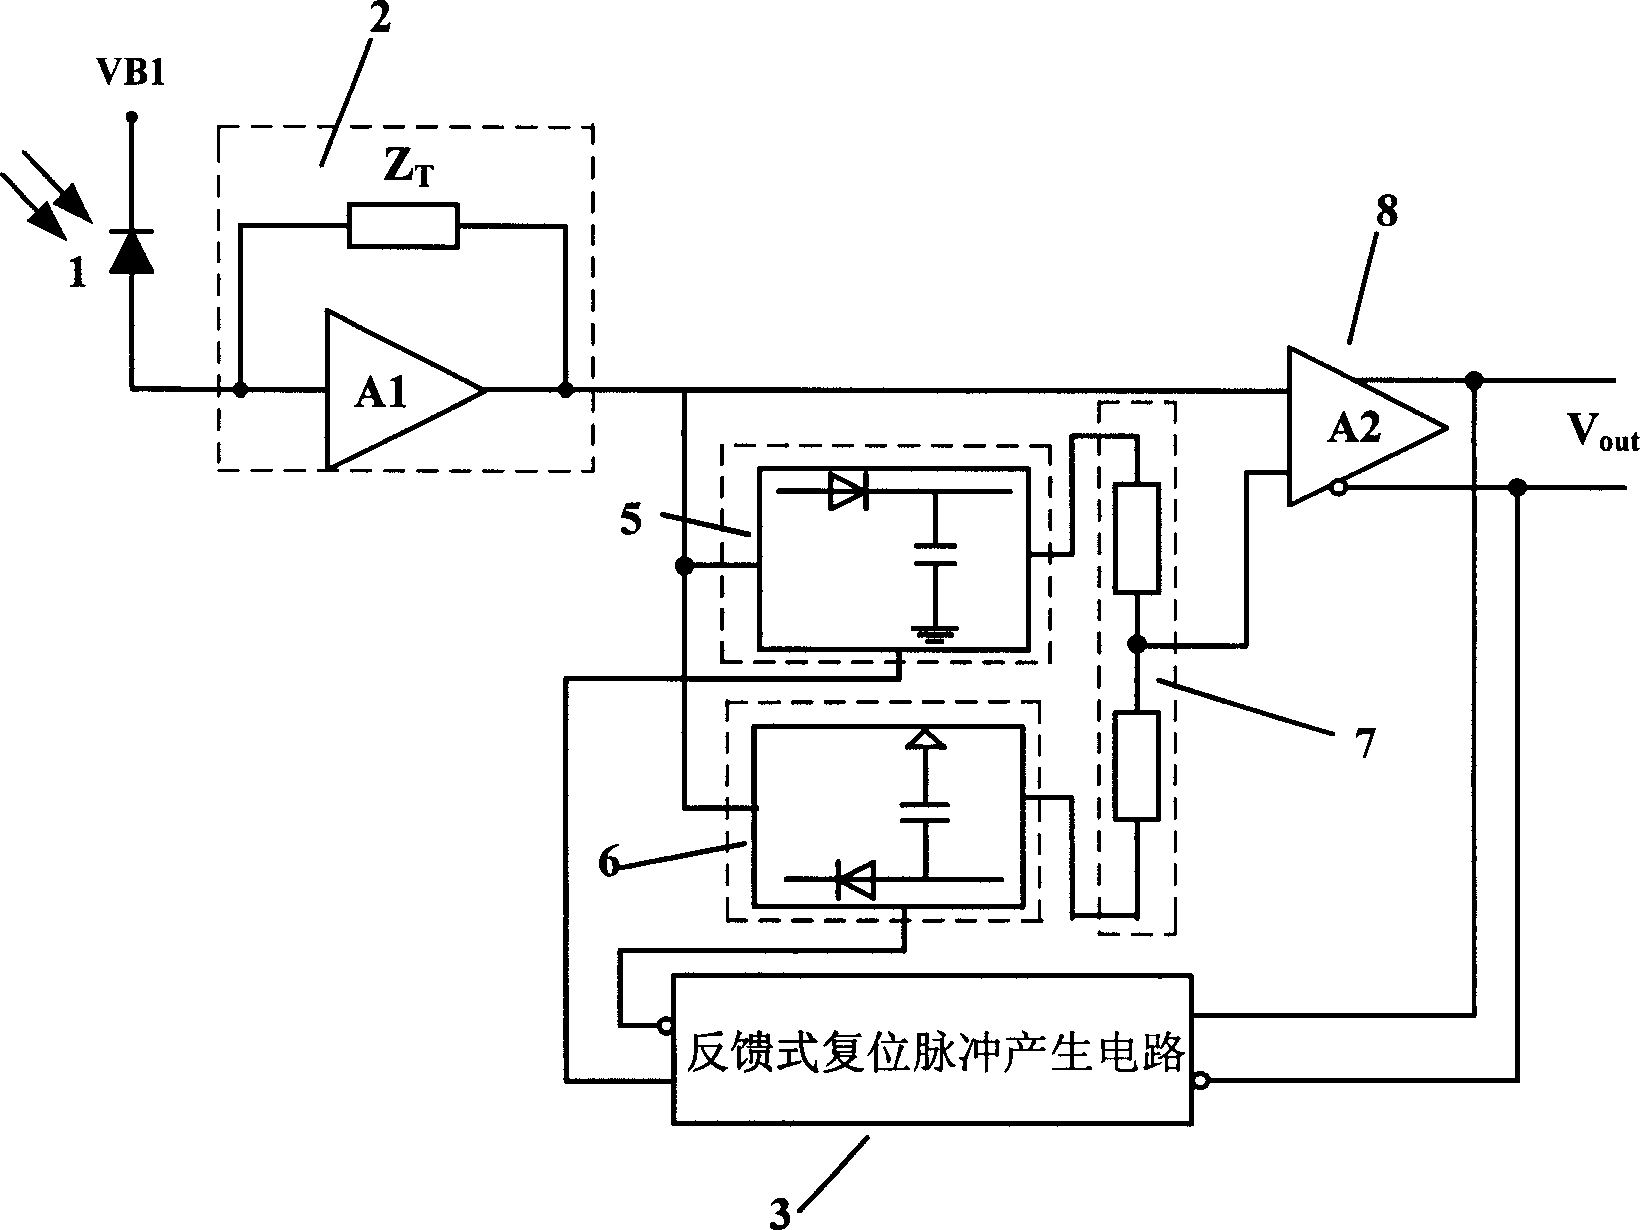 Optical burst-mode receiver